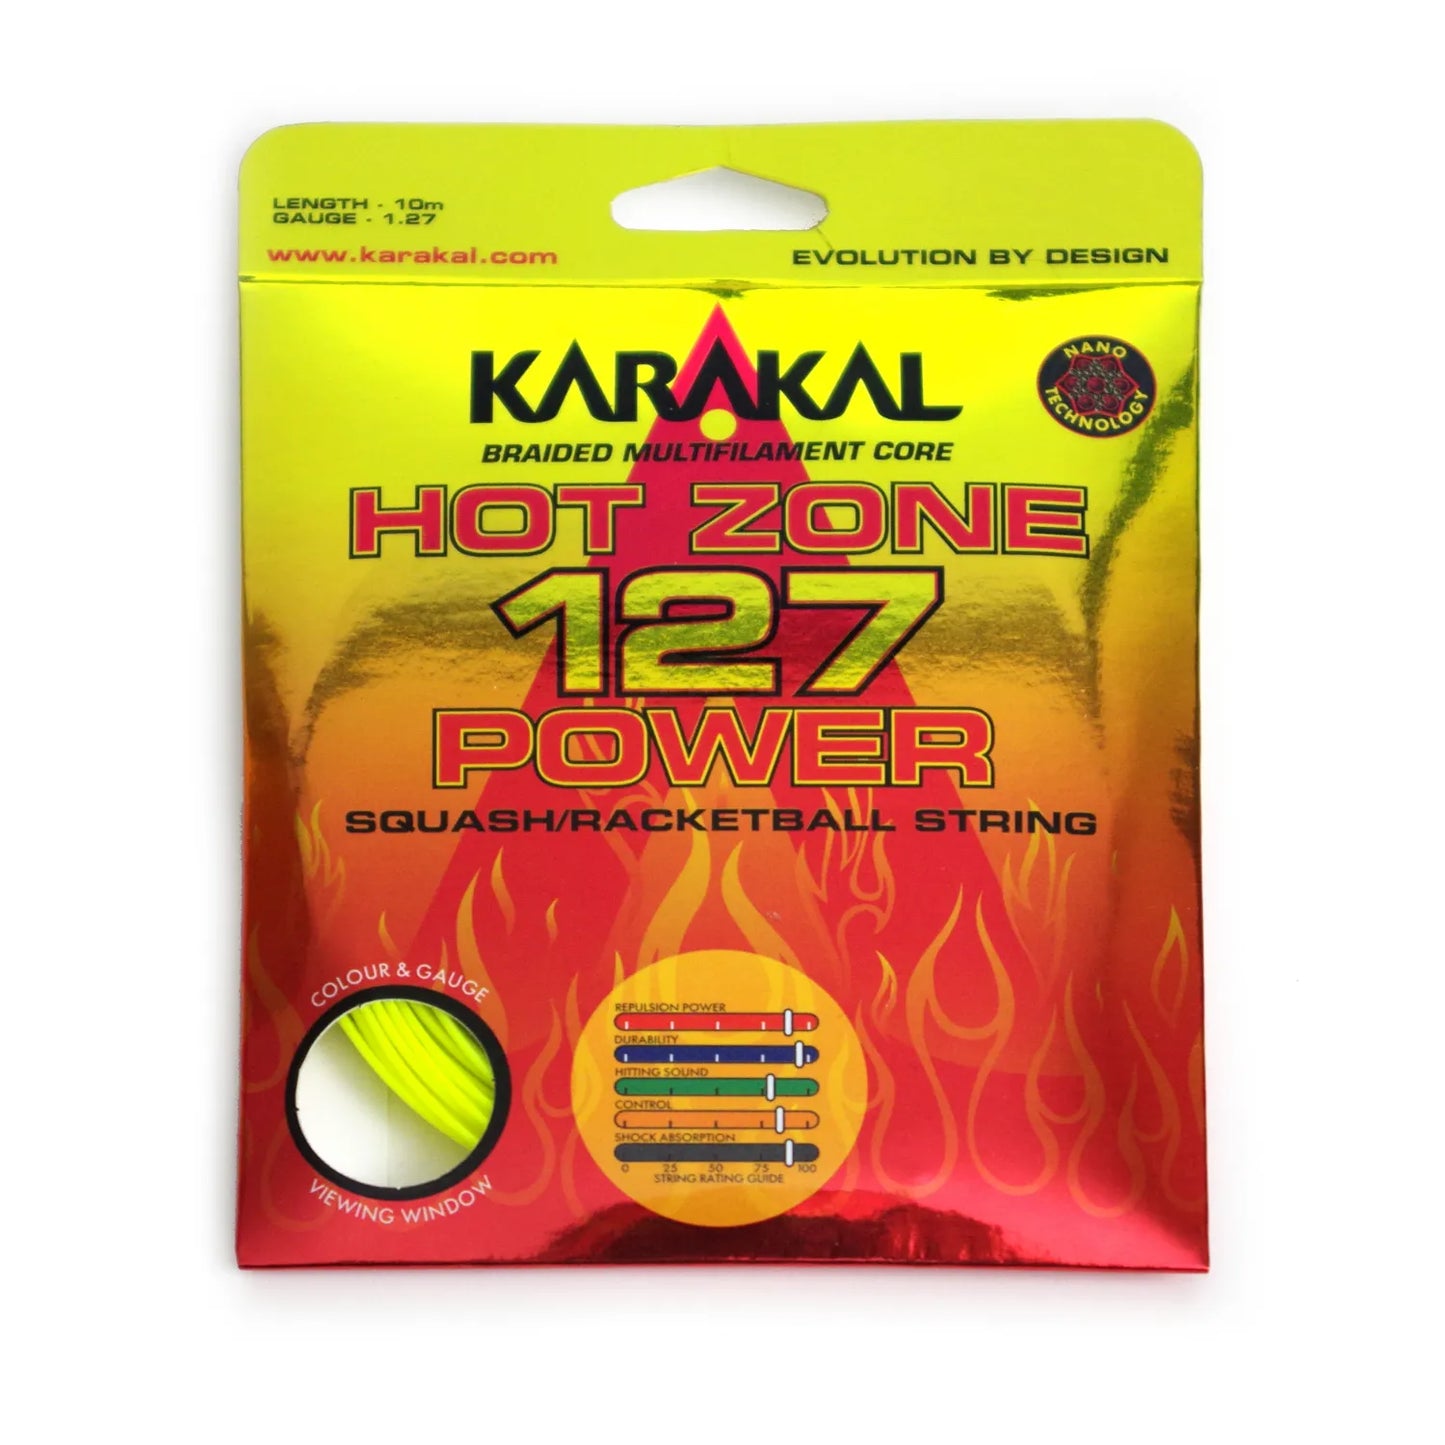 Karakal Hot Zone 127 Power Racketball String